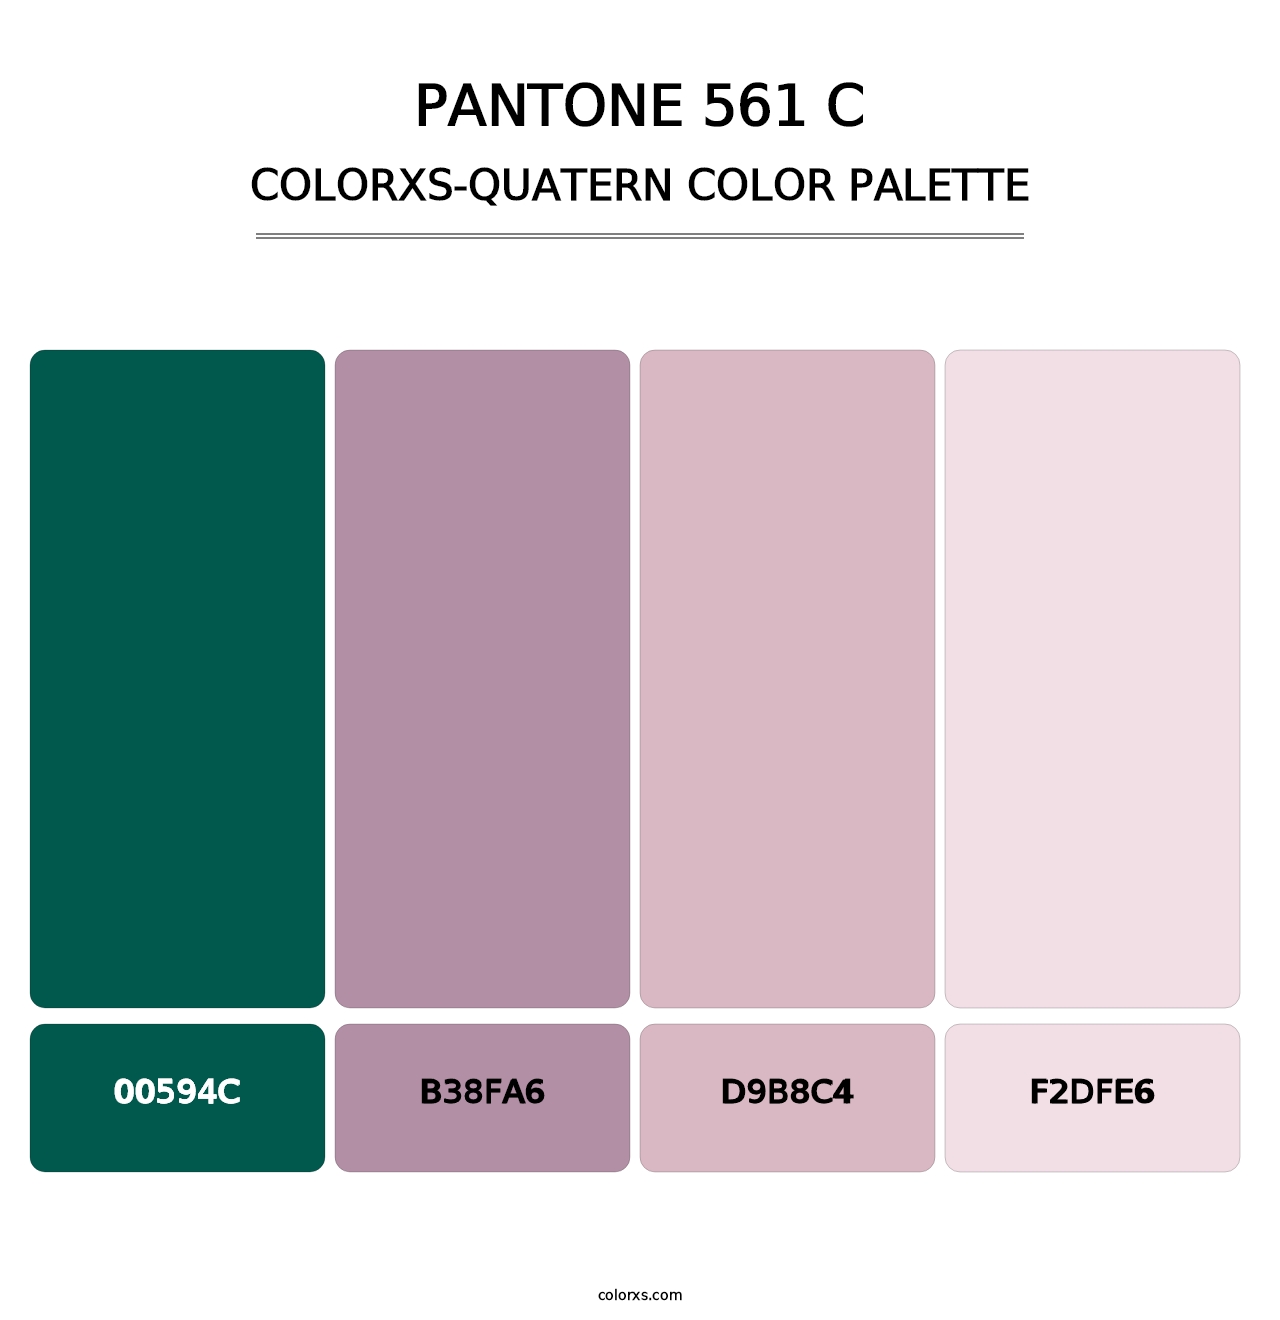 PANTONE 561 C - Colorxs Quatern Palette